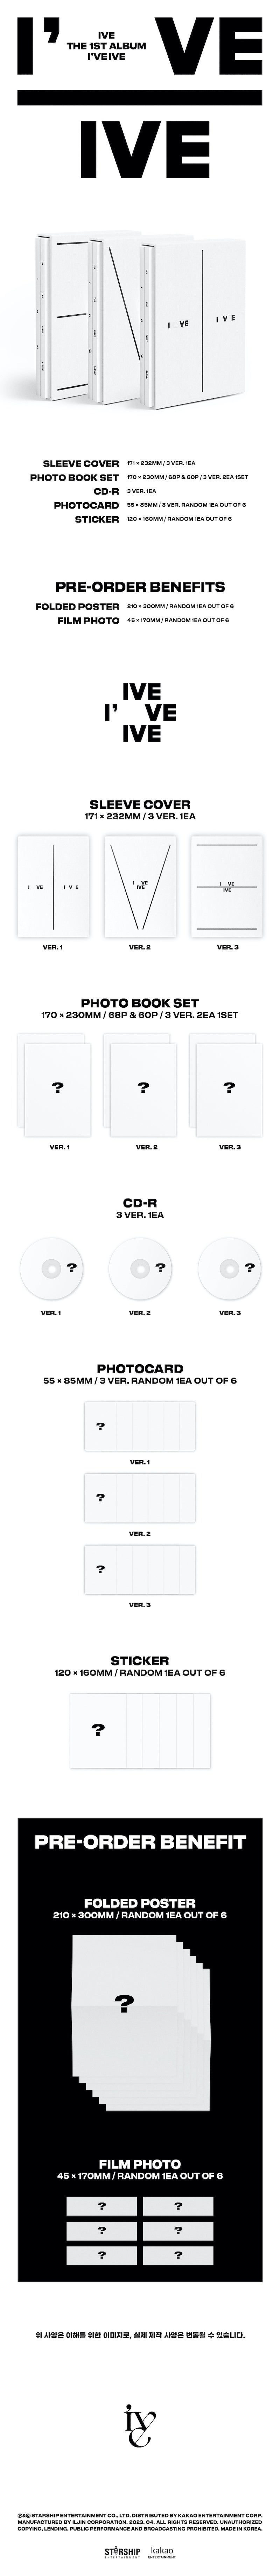 K-Pop CD IVE - 1st Album 'I've IVE' (Photobook Ver.)